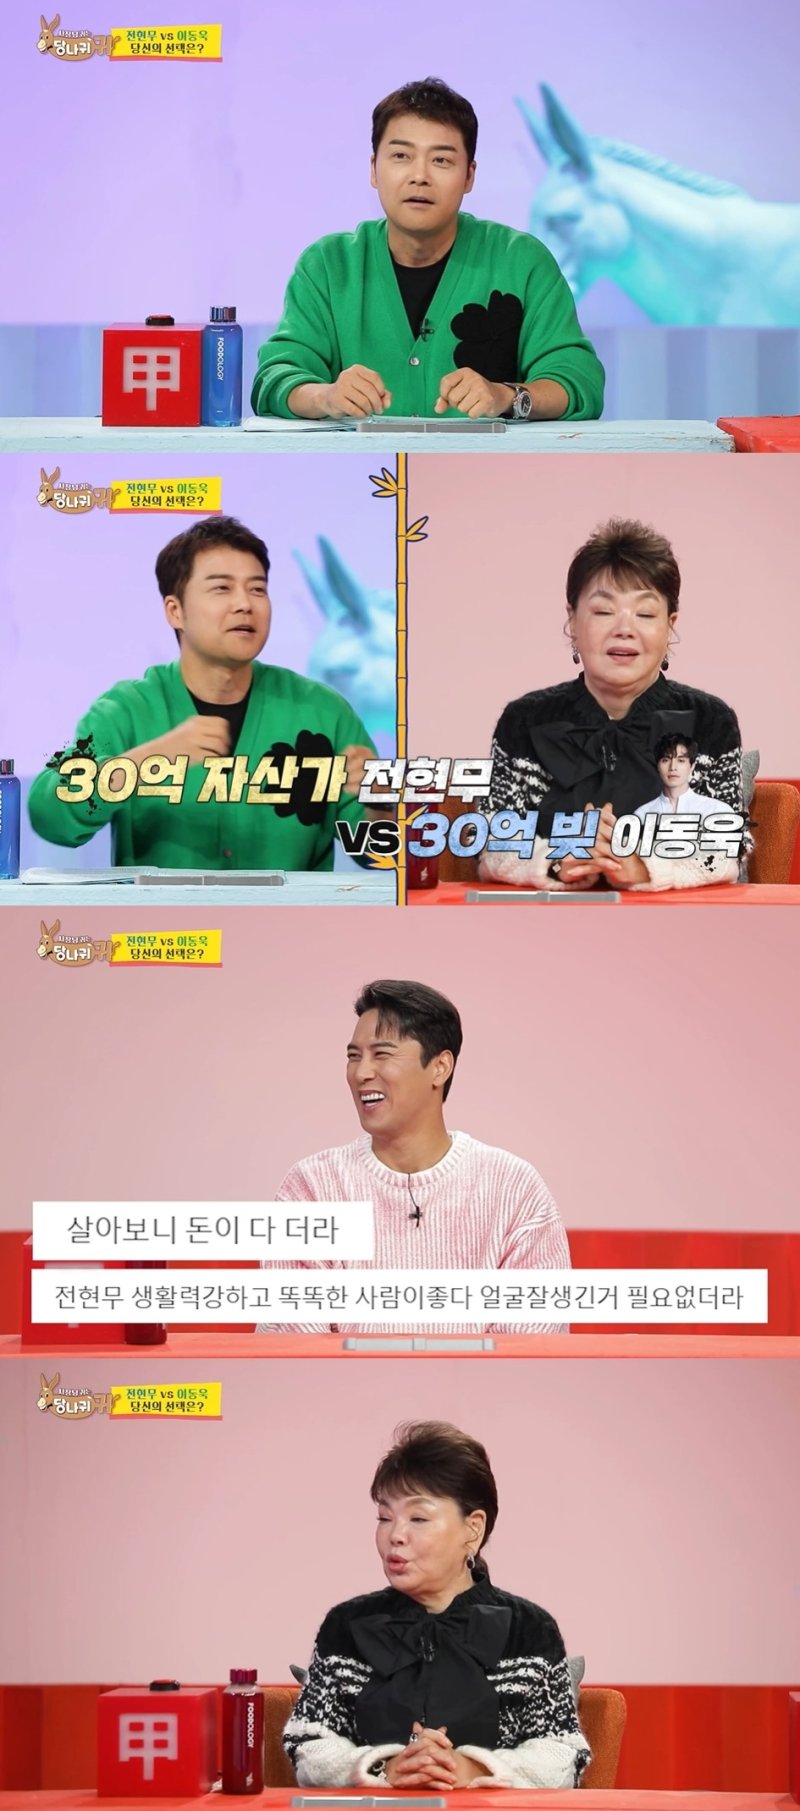 김수미, '연봉 수입억원' 전현무에 "재산이 30억 밖에 없어?" 충격